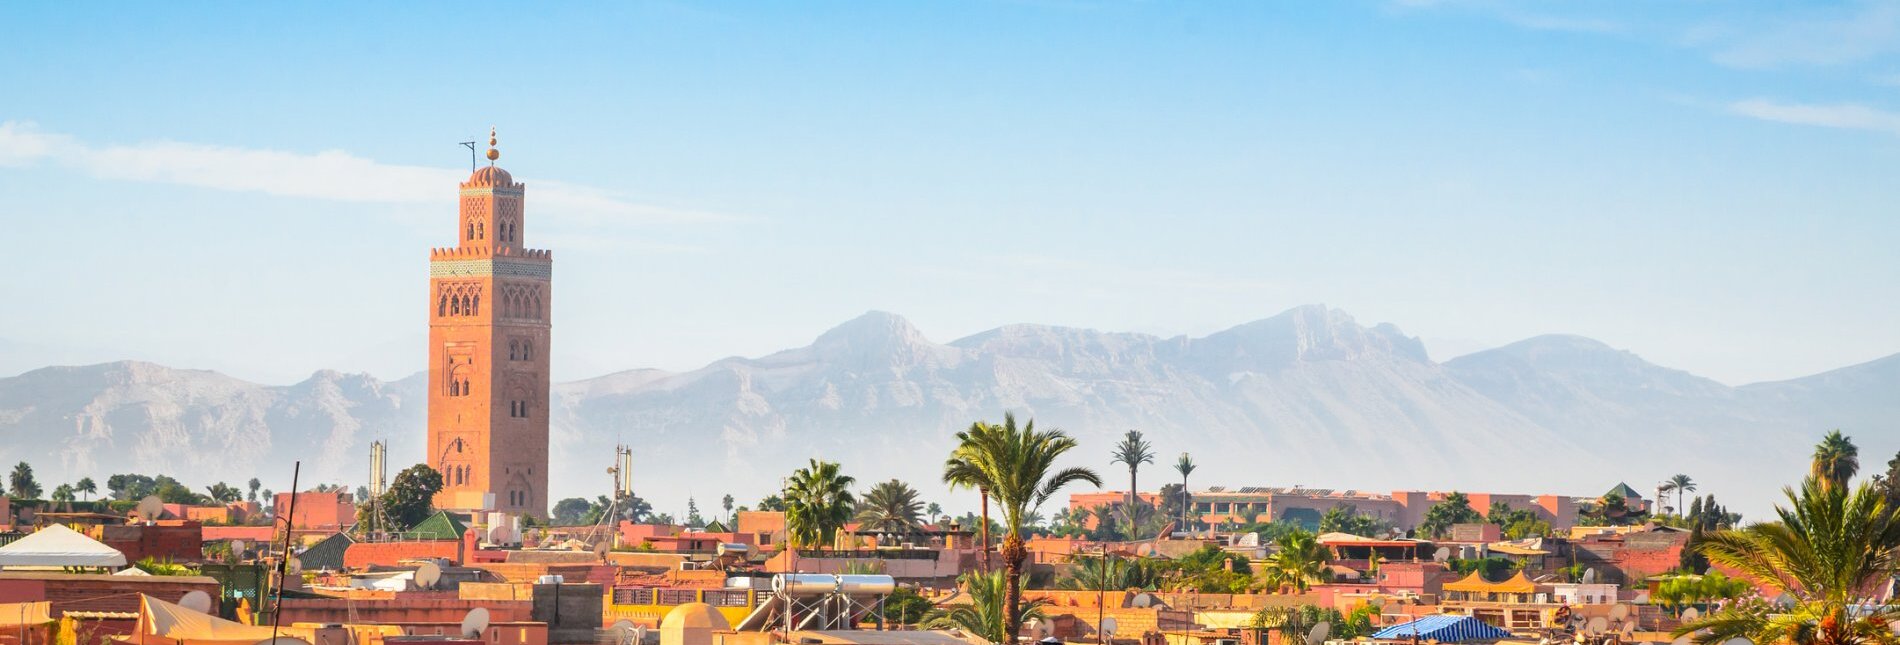 Blick auf Marrakesch